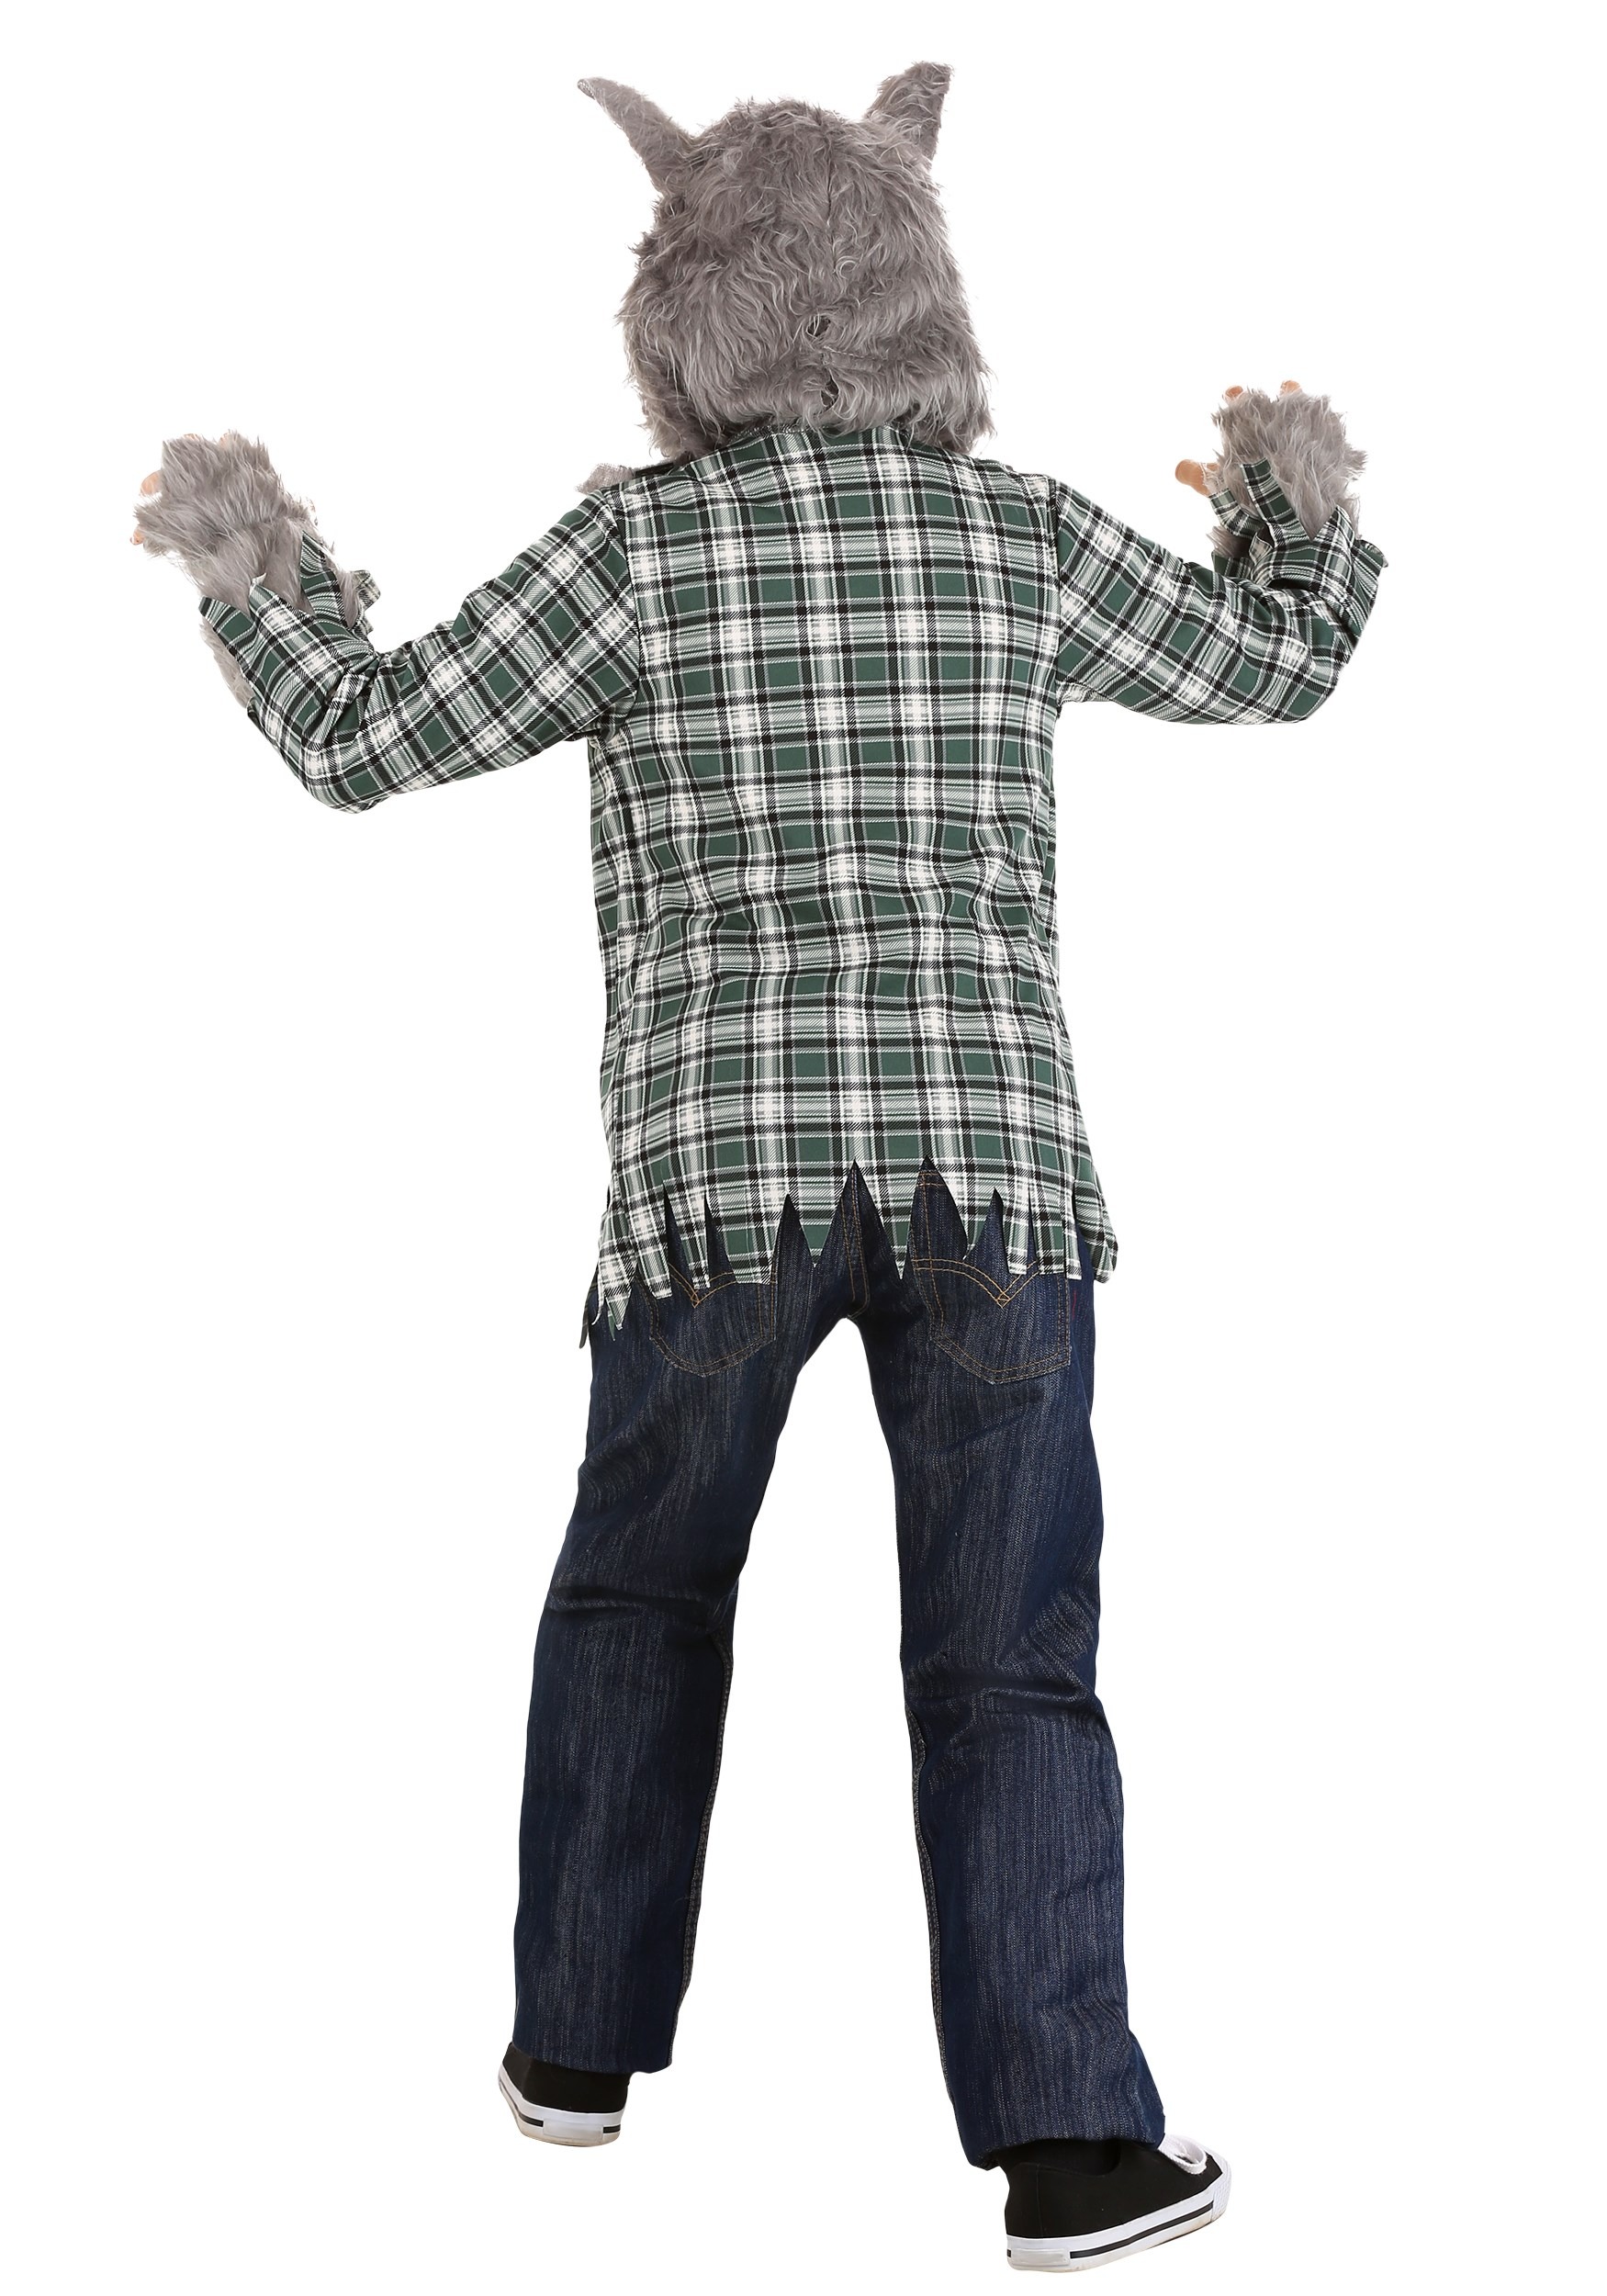 Werewolf Halloween Costume For Kids